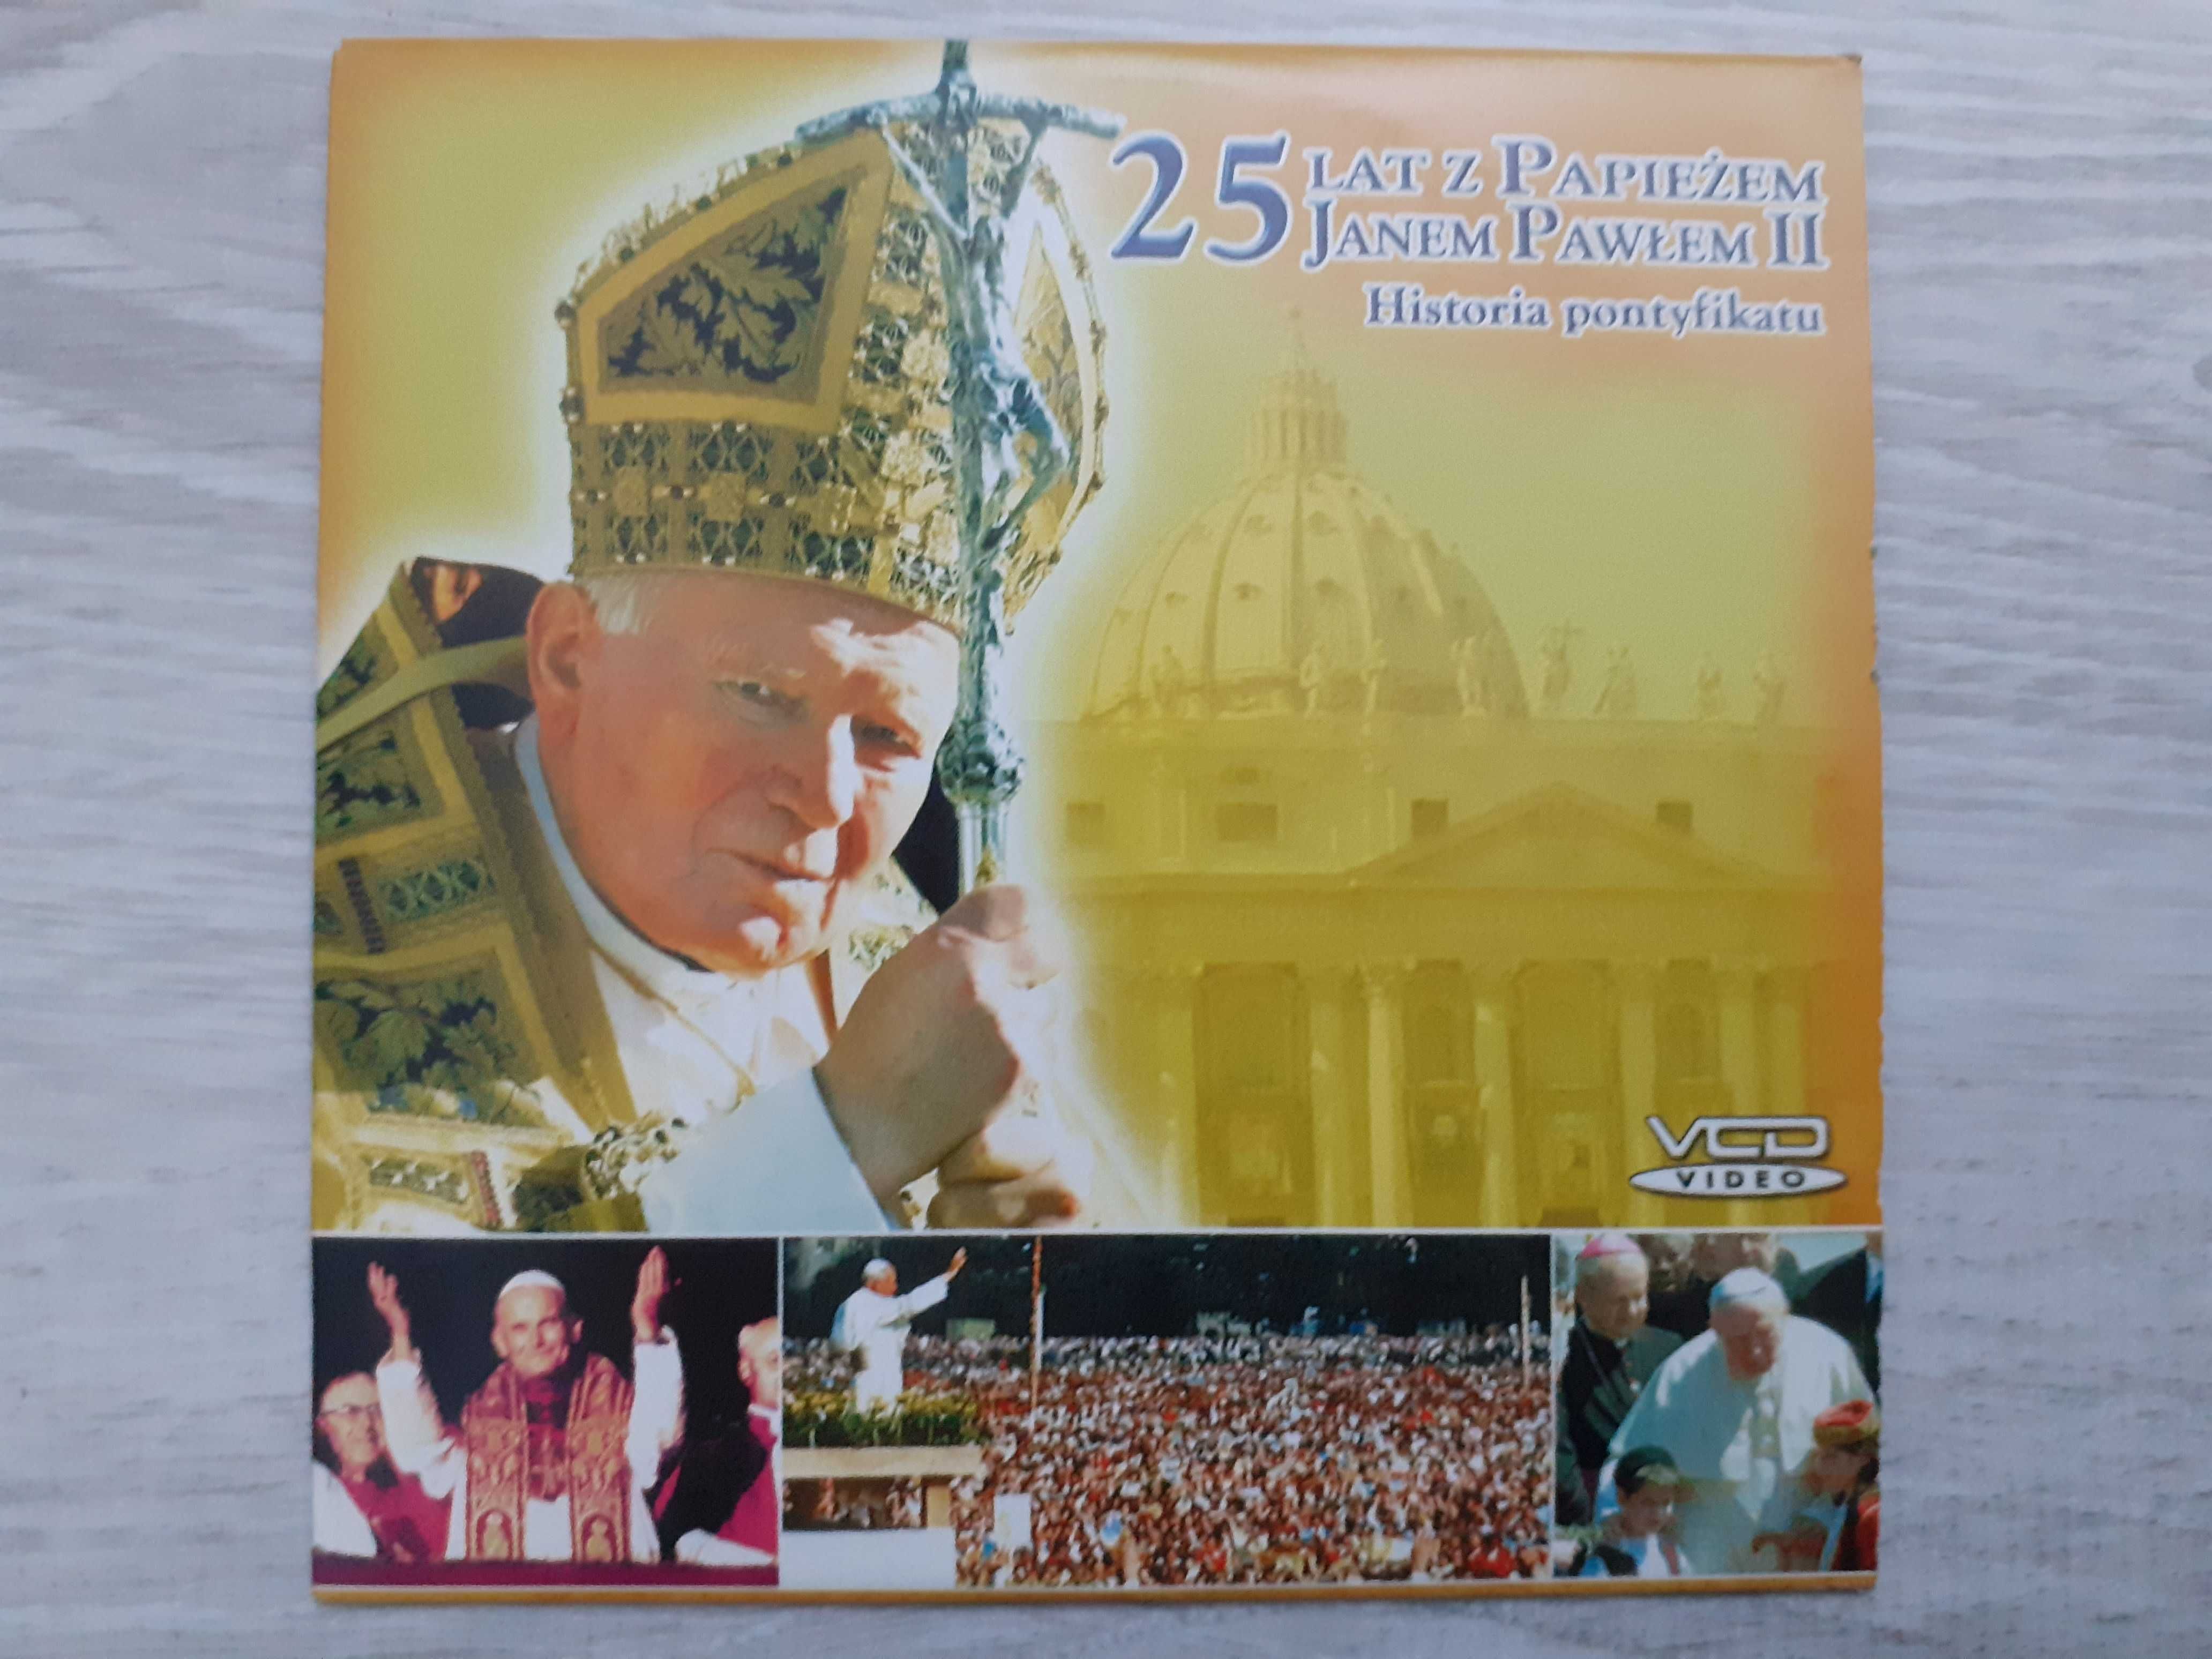 25 lat z Papieżem Janem Pawłem II Historia pontyfikatu VCD